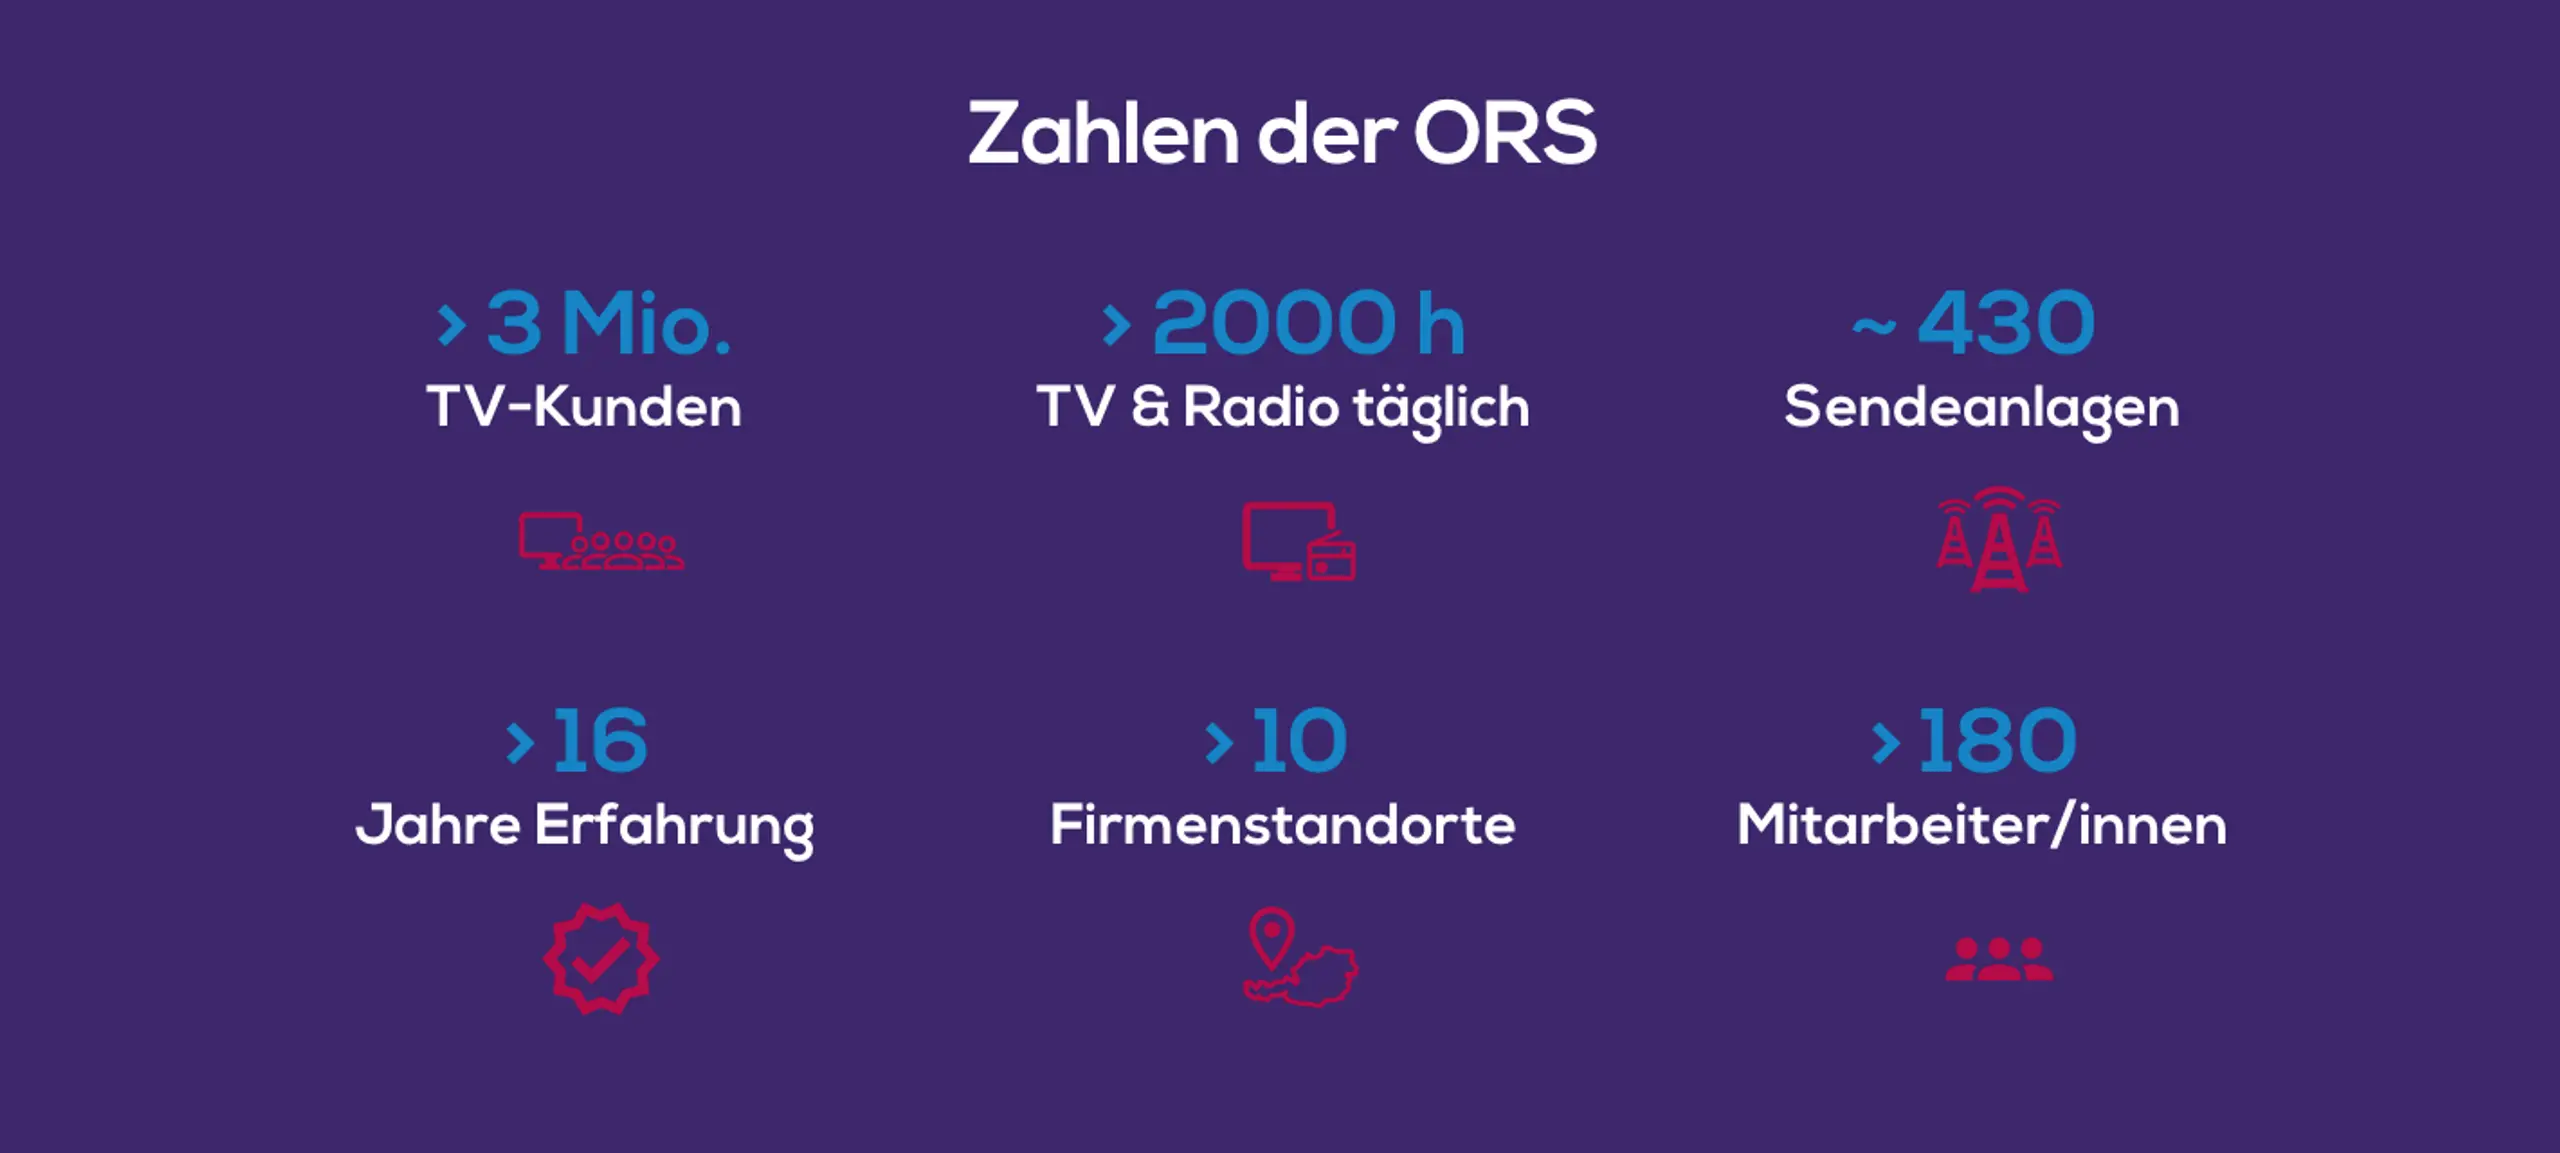 TV-Kunden, Sendeanlagen, Nutzung. Zahlen der ORS.